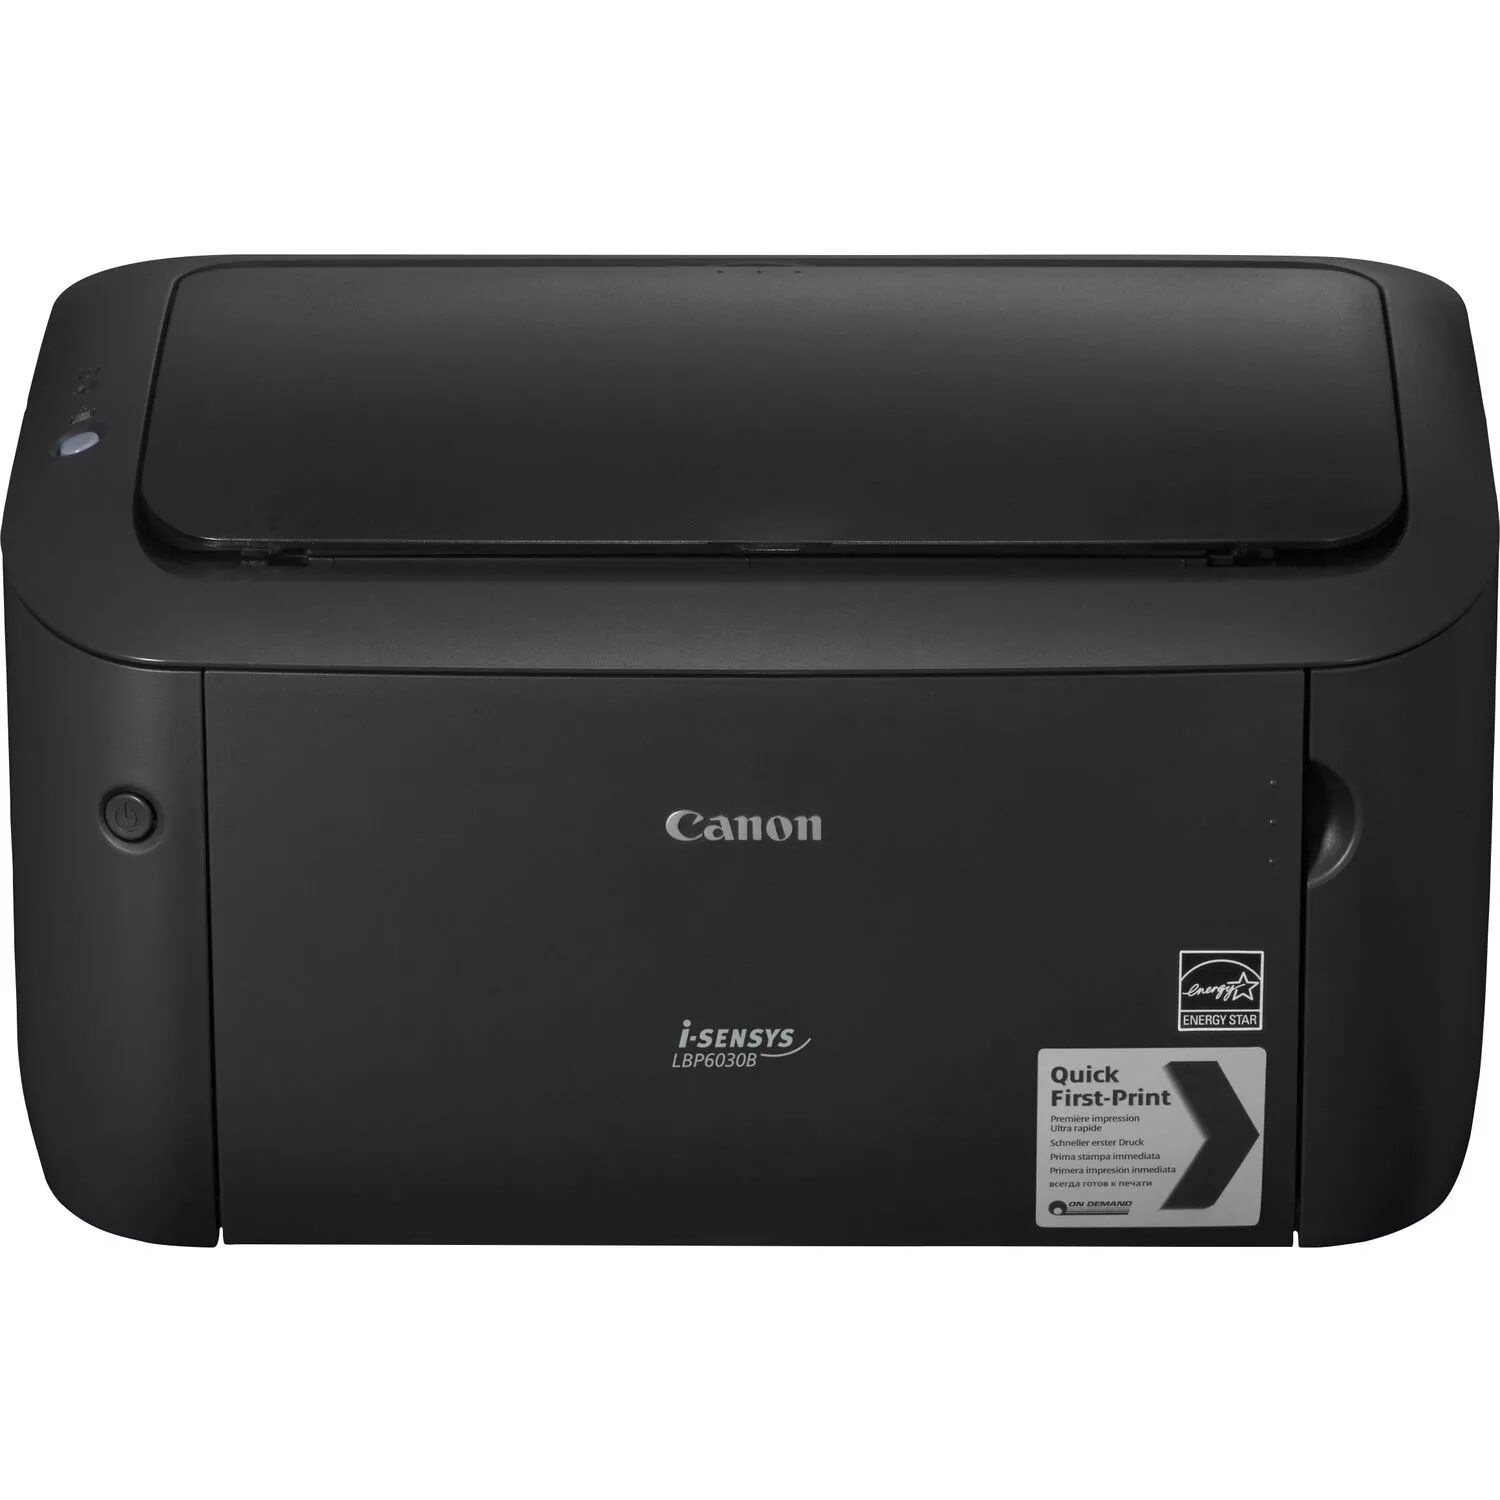 Принтер Canon lbp6030b. Canon i-SENSYS lbp6030b. Принтер лазерный Canon LBP 6030. Принтер лазерный Canon lbp6020. 1 принтер купить недорого